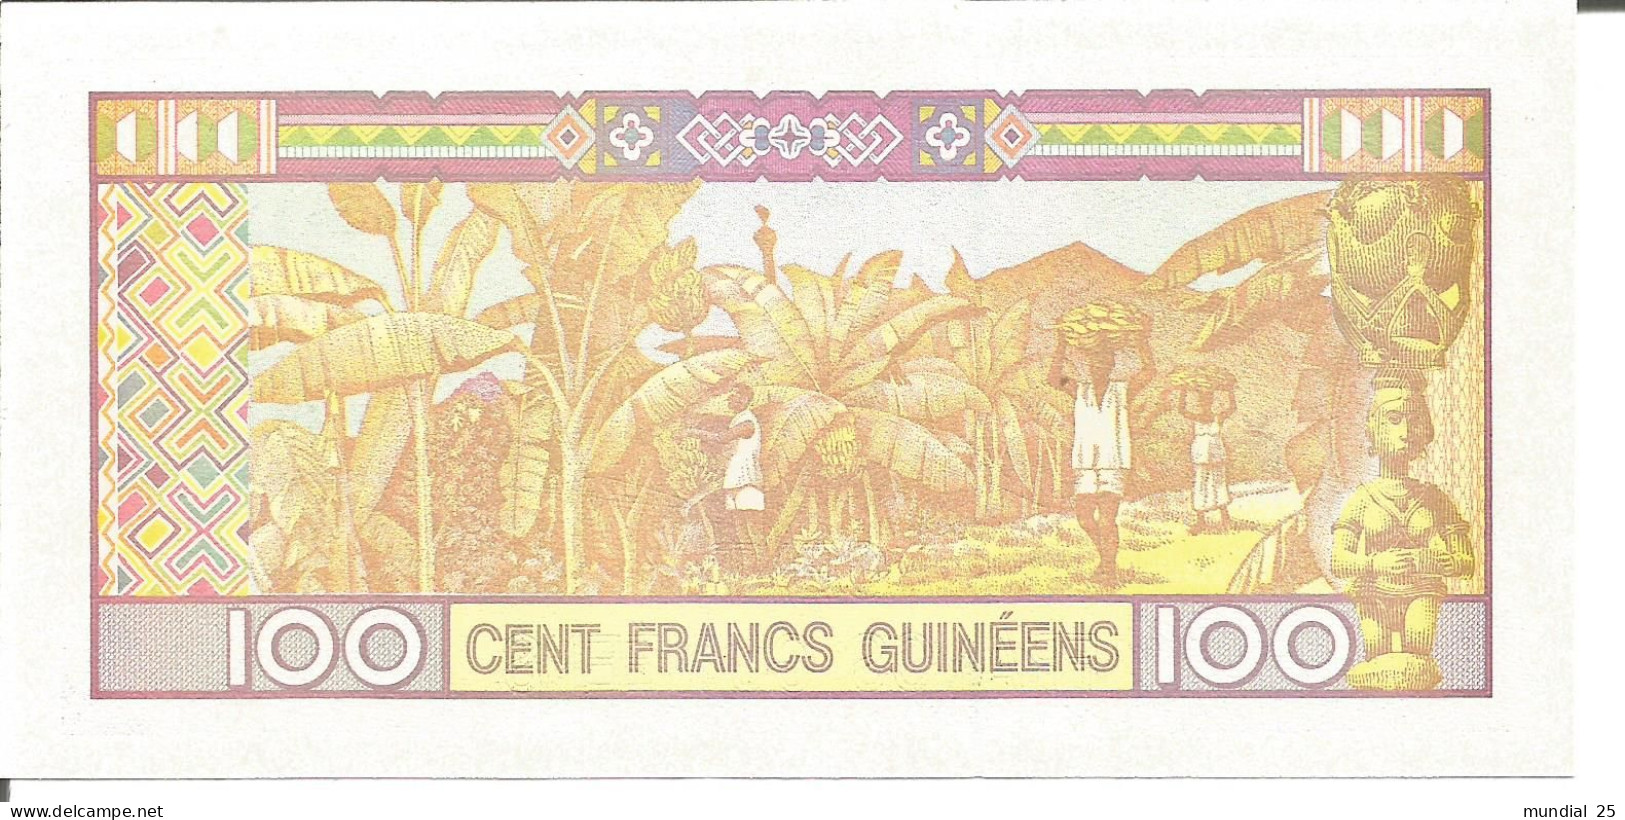 3 GUINEA NOTES 100 FRANCS GUINÉENS 2012 - Guinea